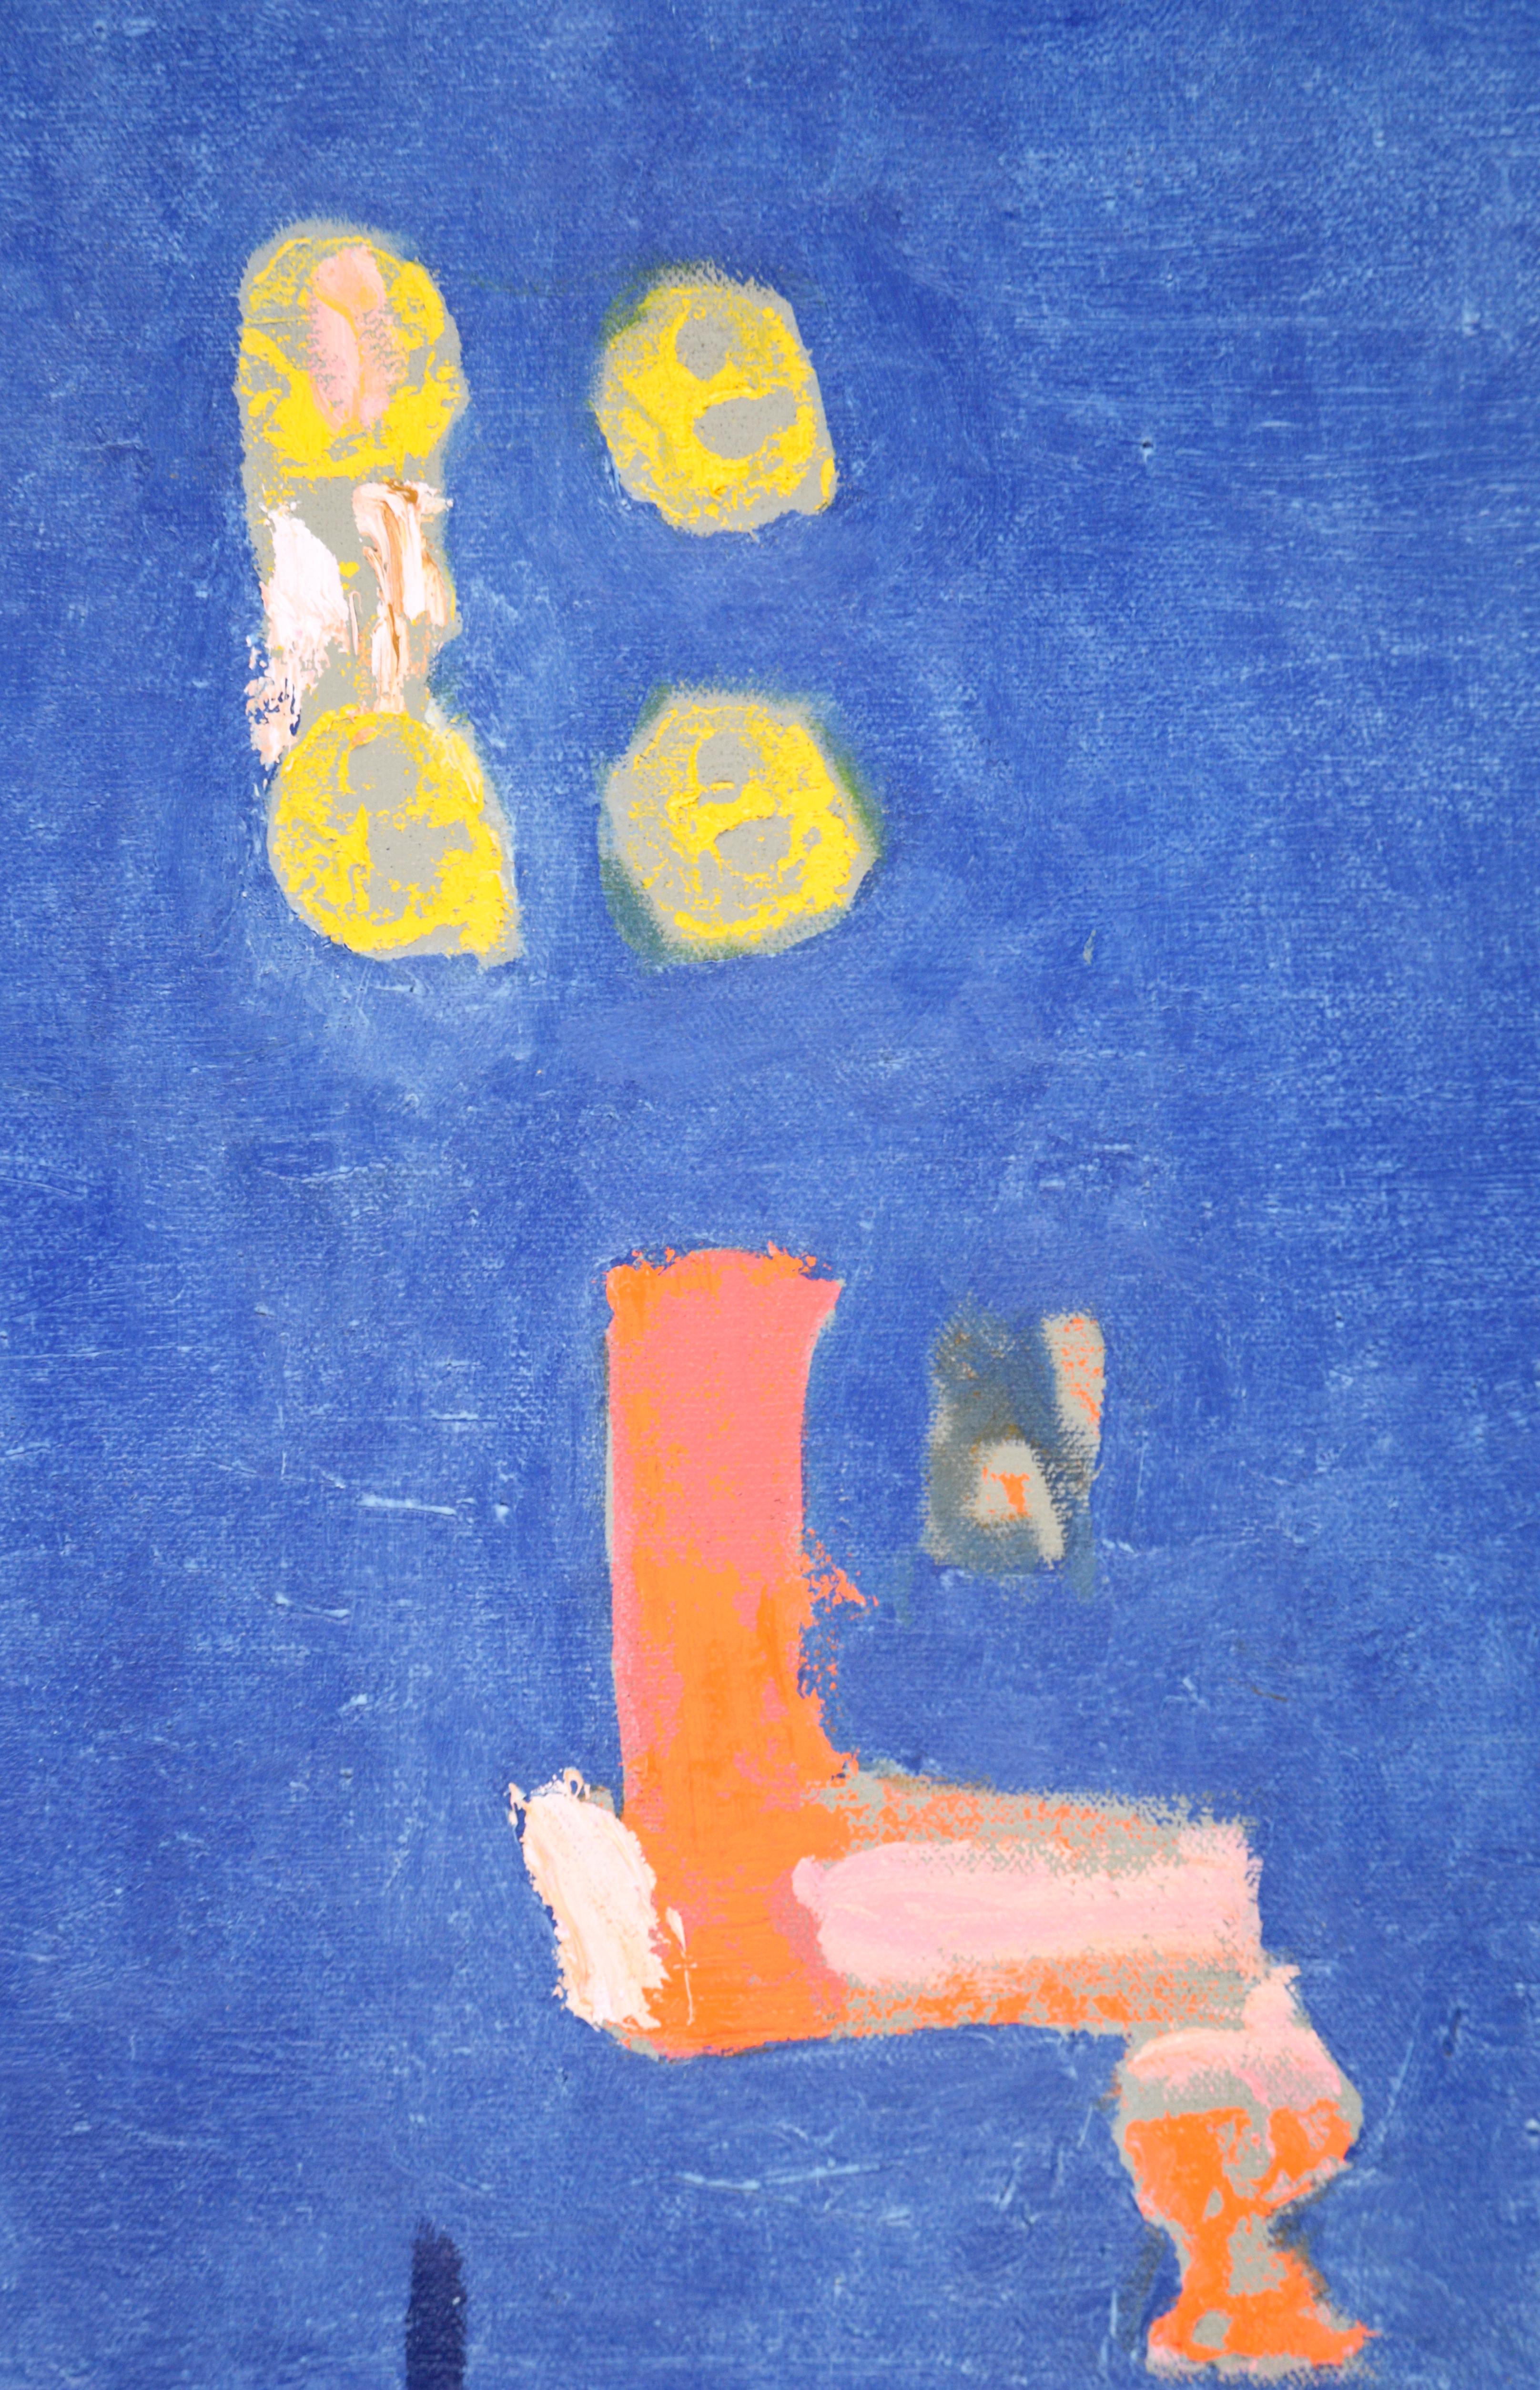 Abstrait contemporain à grande échelle avec des formes et des textures en bleu et orange par l'artiste de la Bay Area Michael Pauker (américain, né en 1957). La longue toile horizontale est divisée en deux sections aux motifs et couleurs contrastés.